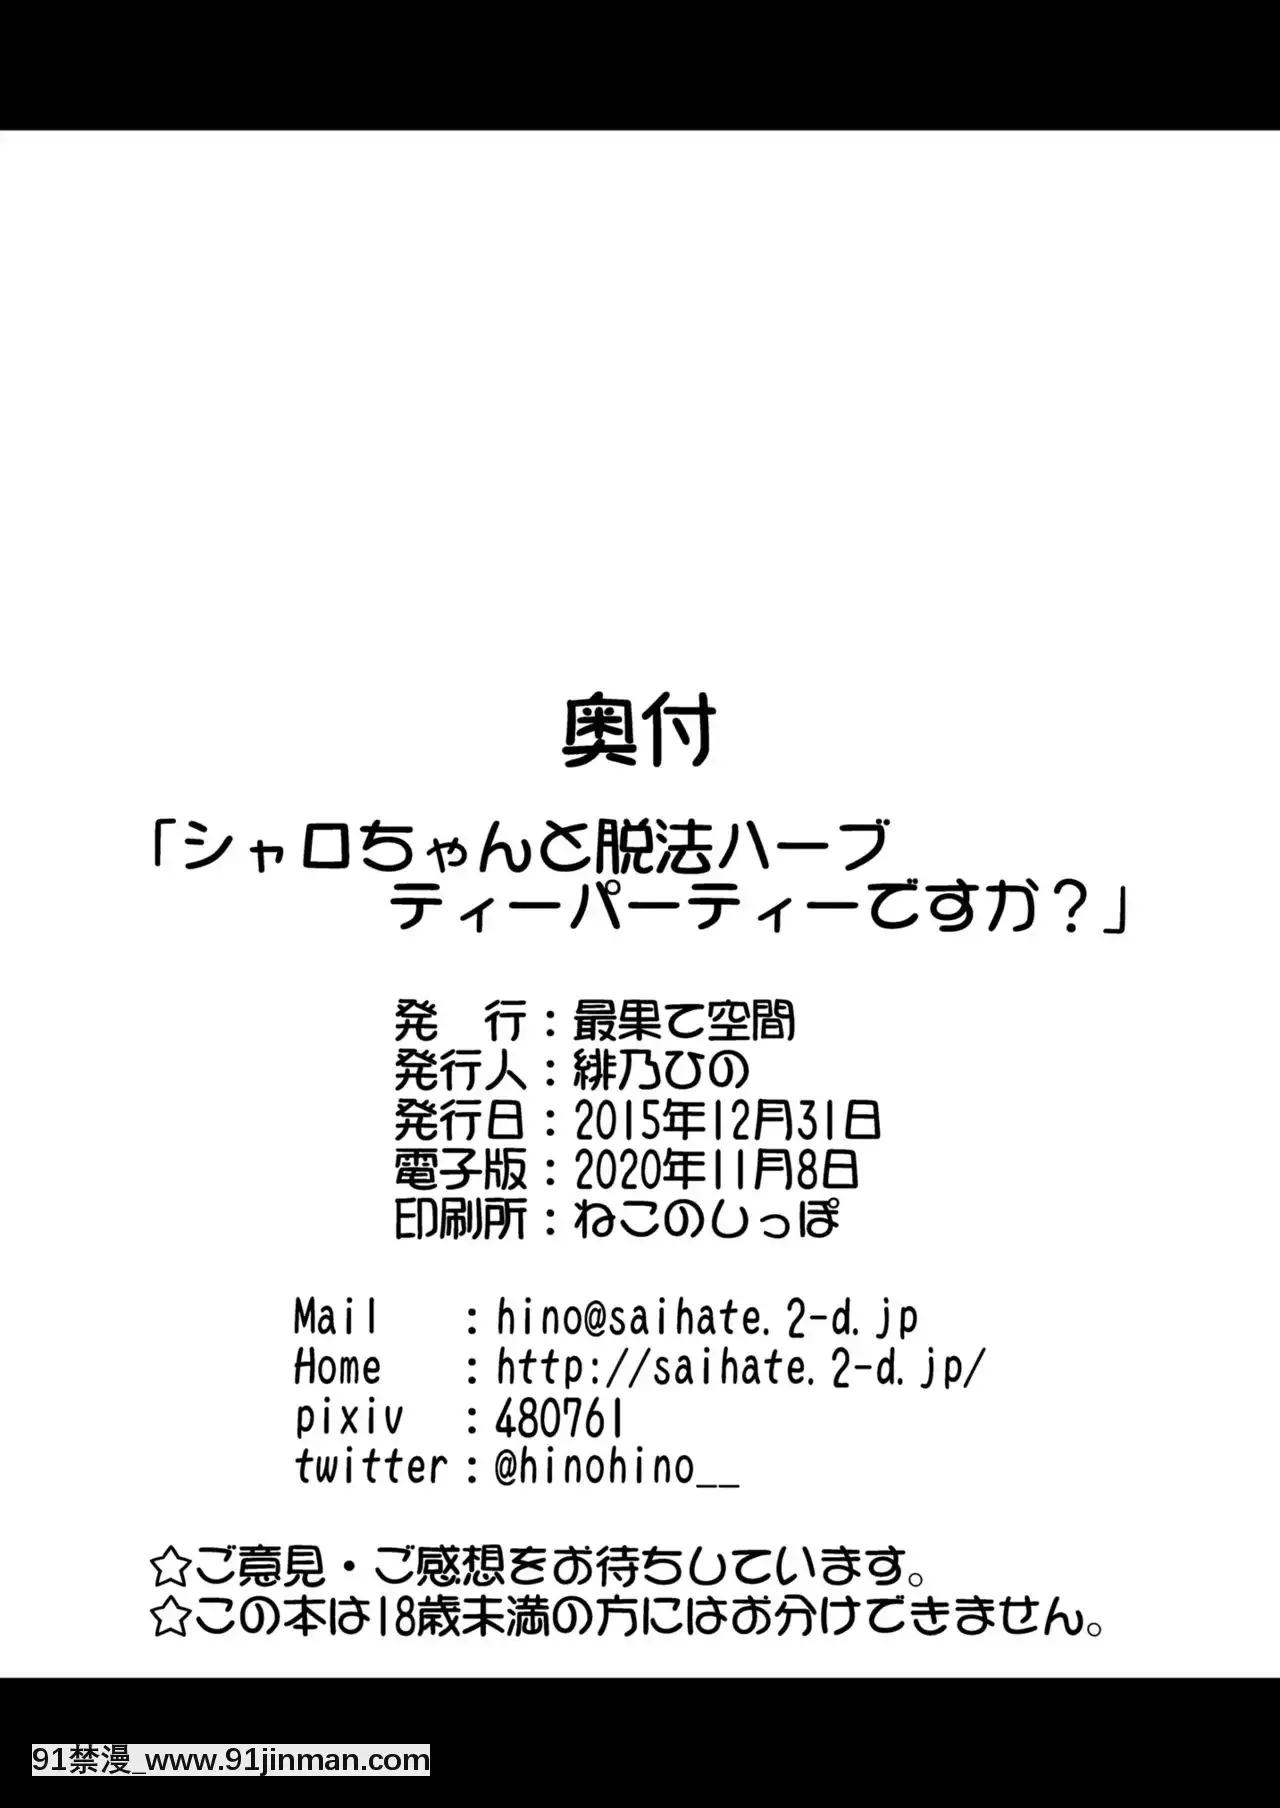 [Văn phòng của Shounen] [Không gian cuối cùng (Hino Hino)] Syaro chan và bữa tiệc trà thảo mộc vi phạm pháp luật?   (Đơn hàng có phải là một con thỏ không?  ) [Phiên bản DL]【truyện tranh giấc mơ ngọt ngào】